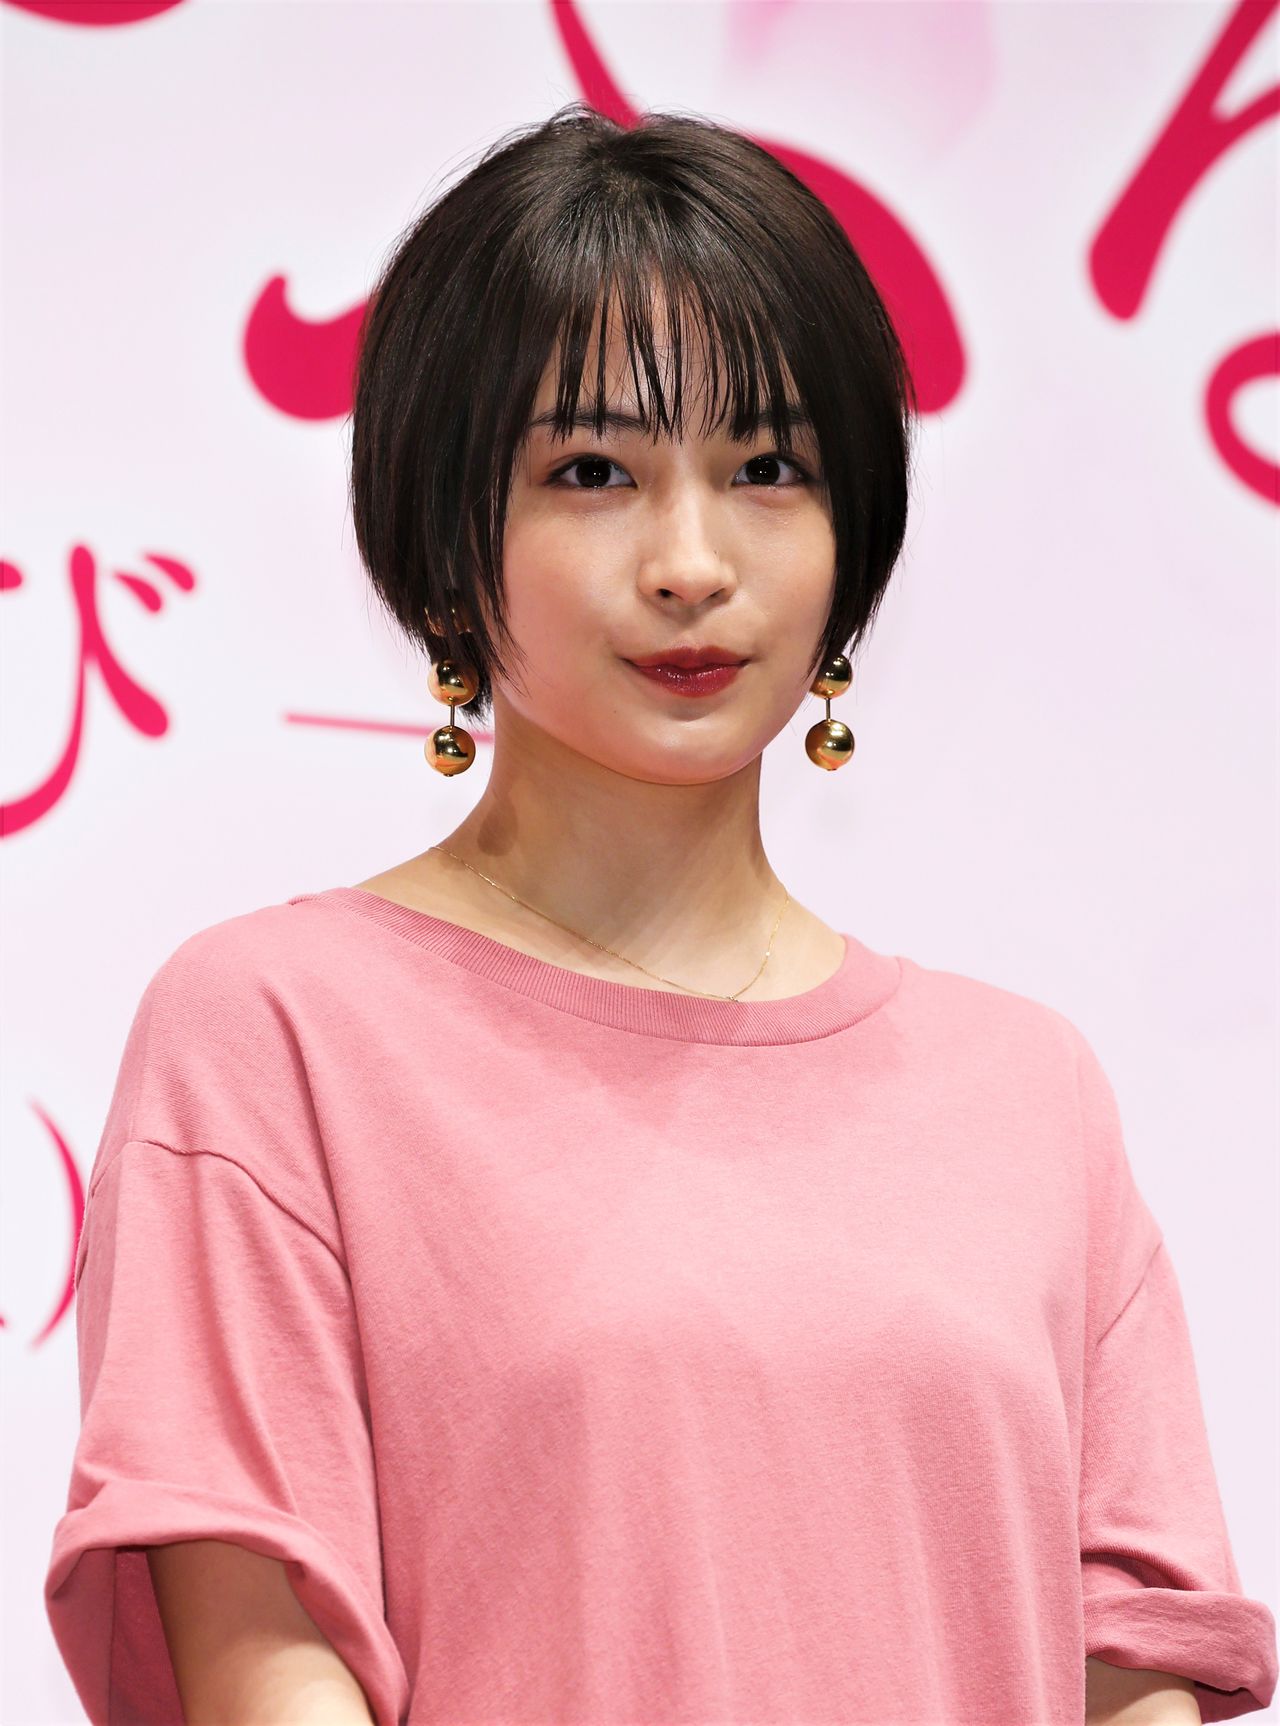 Entre 2016 y 2018 se produjeron tres versiones cinematográficas de Chihayafuru, con la actriz Hirose Suzu en el papel de la heroína Ayase Chihaya. El 6 de marzo de 2018 fue el preestreno de la tercera película Chihayafuru: Musubi (Jiji Press).